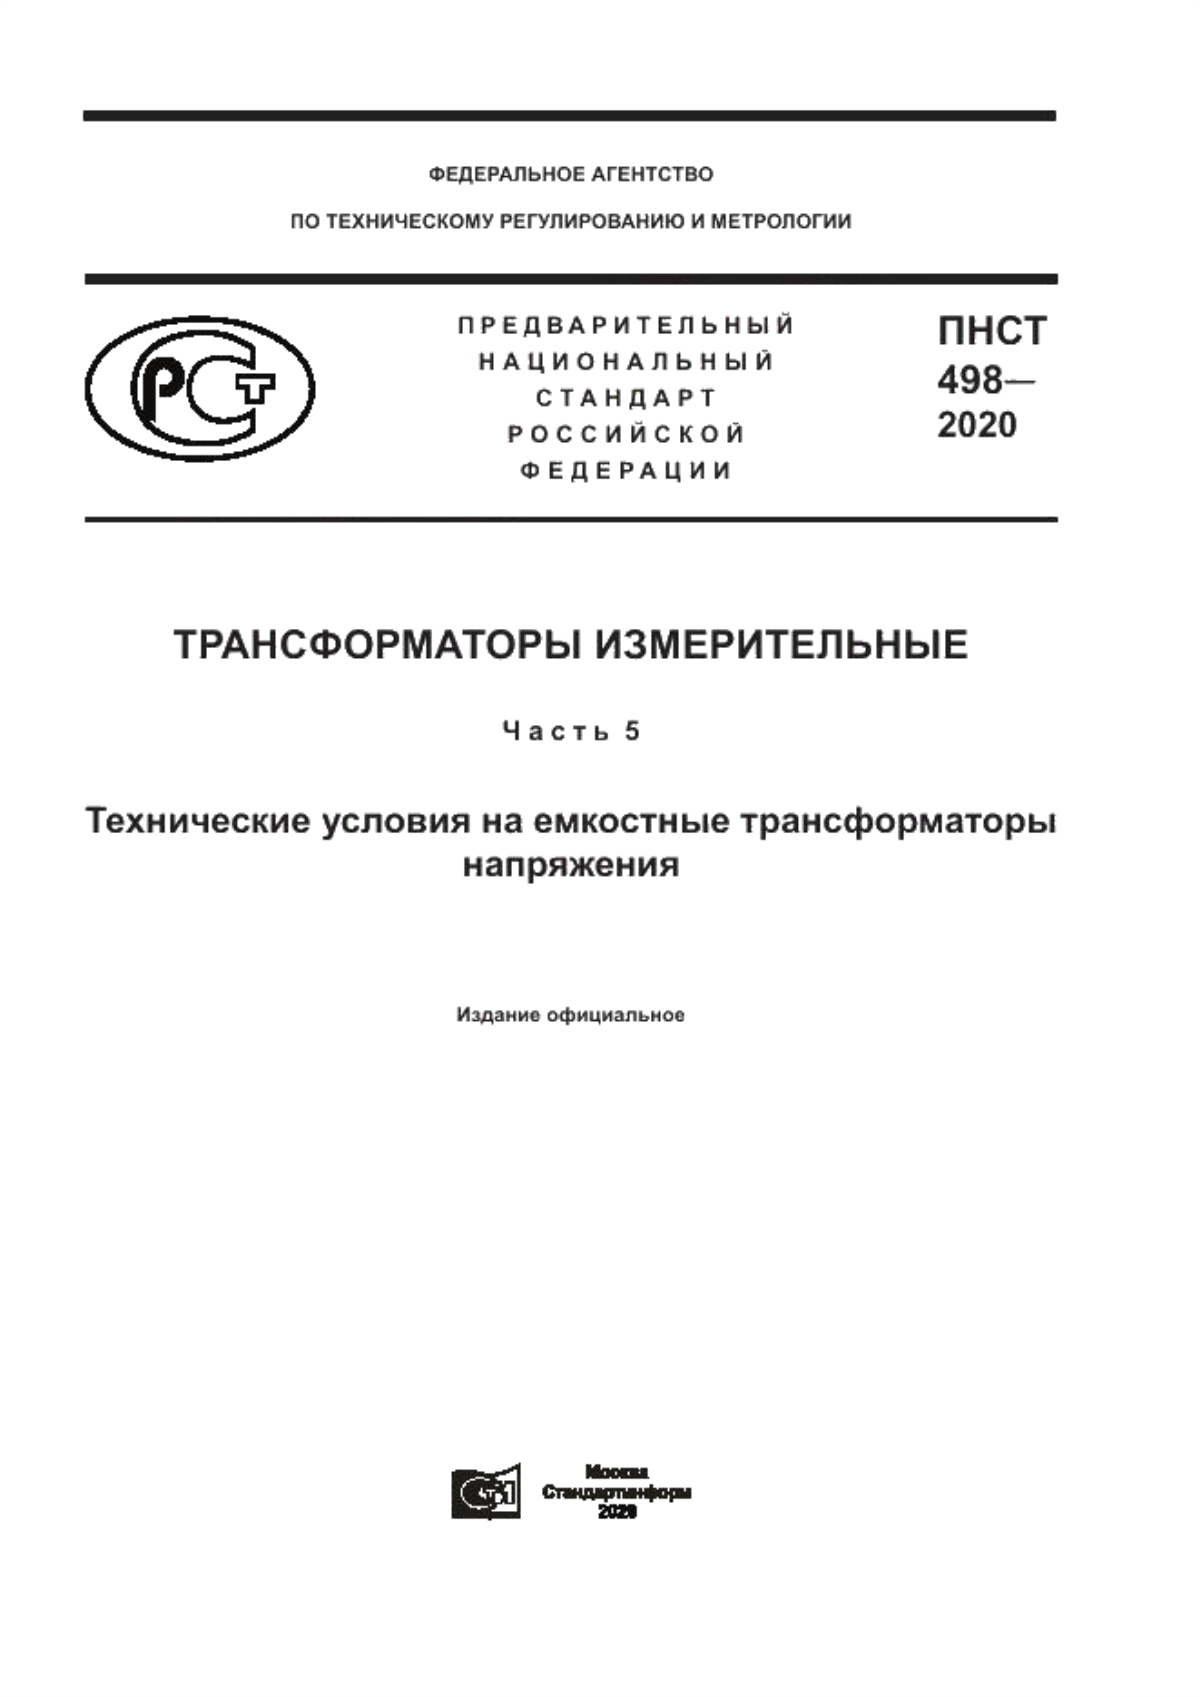 ПНСТ 498-2020 Трансформаторы измерительные. Часть 5. Технические условия на емкостные трансформаторы напряжения